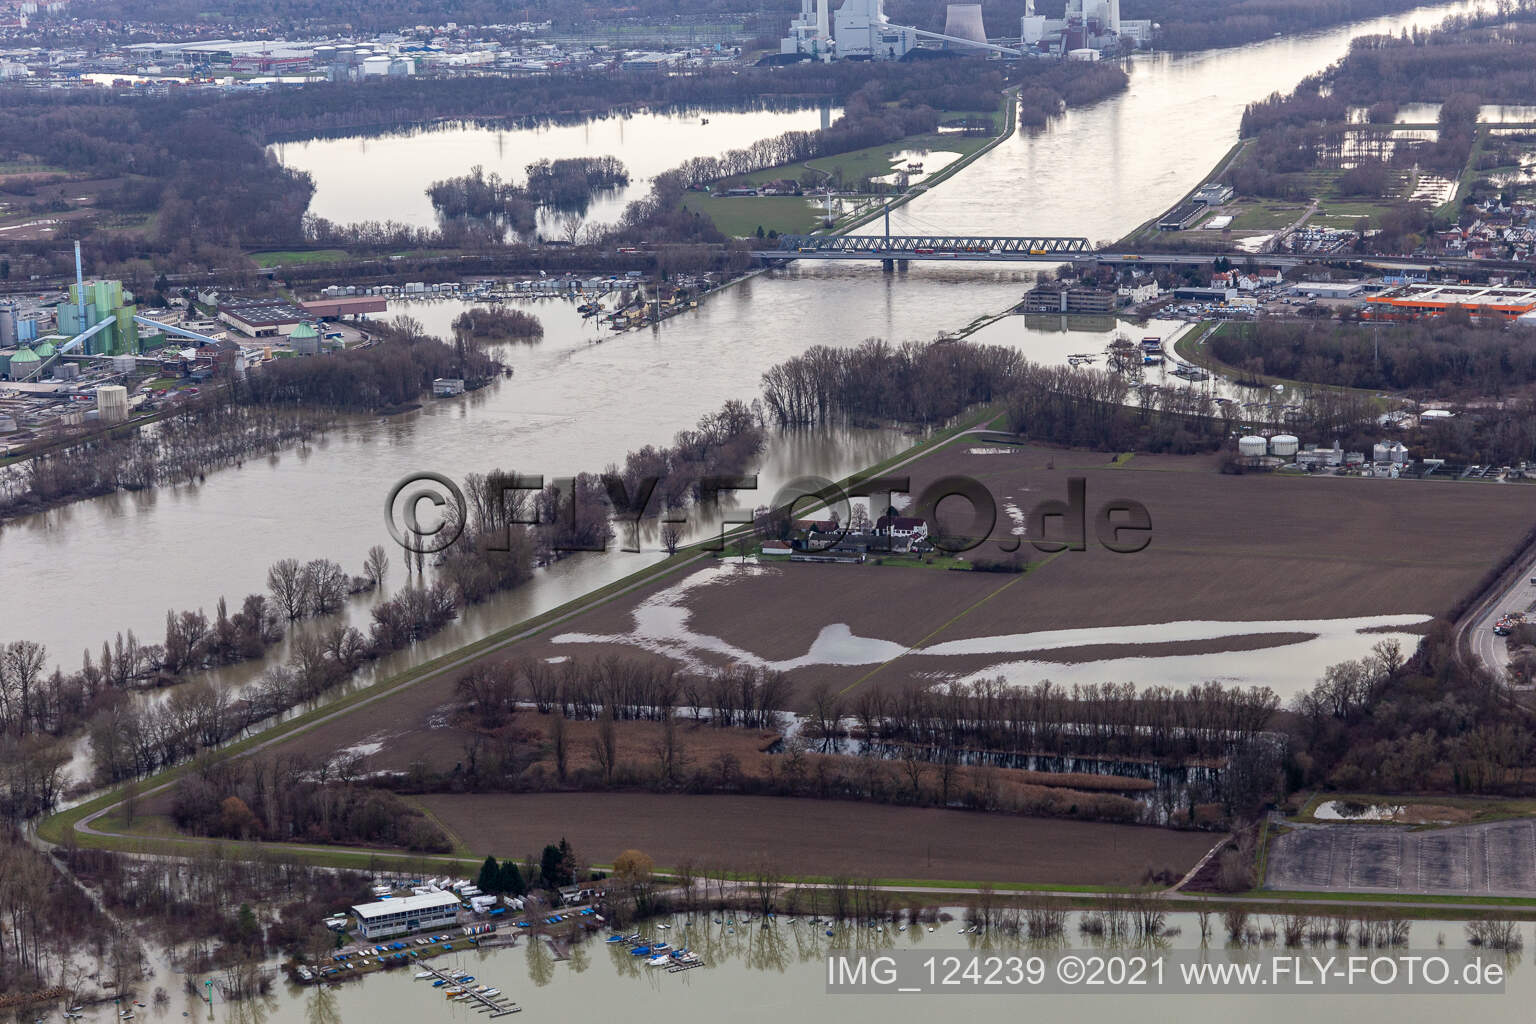 Hofgut Ludwigsau near Rhine floods in the district Maximiliansau in Wörth am Rhein in the state Rhineland-Palatinate, Germany